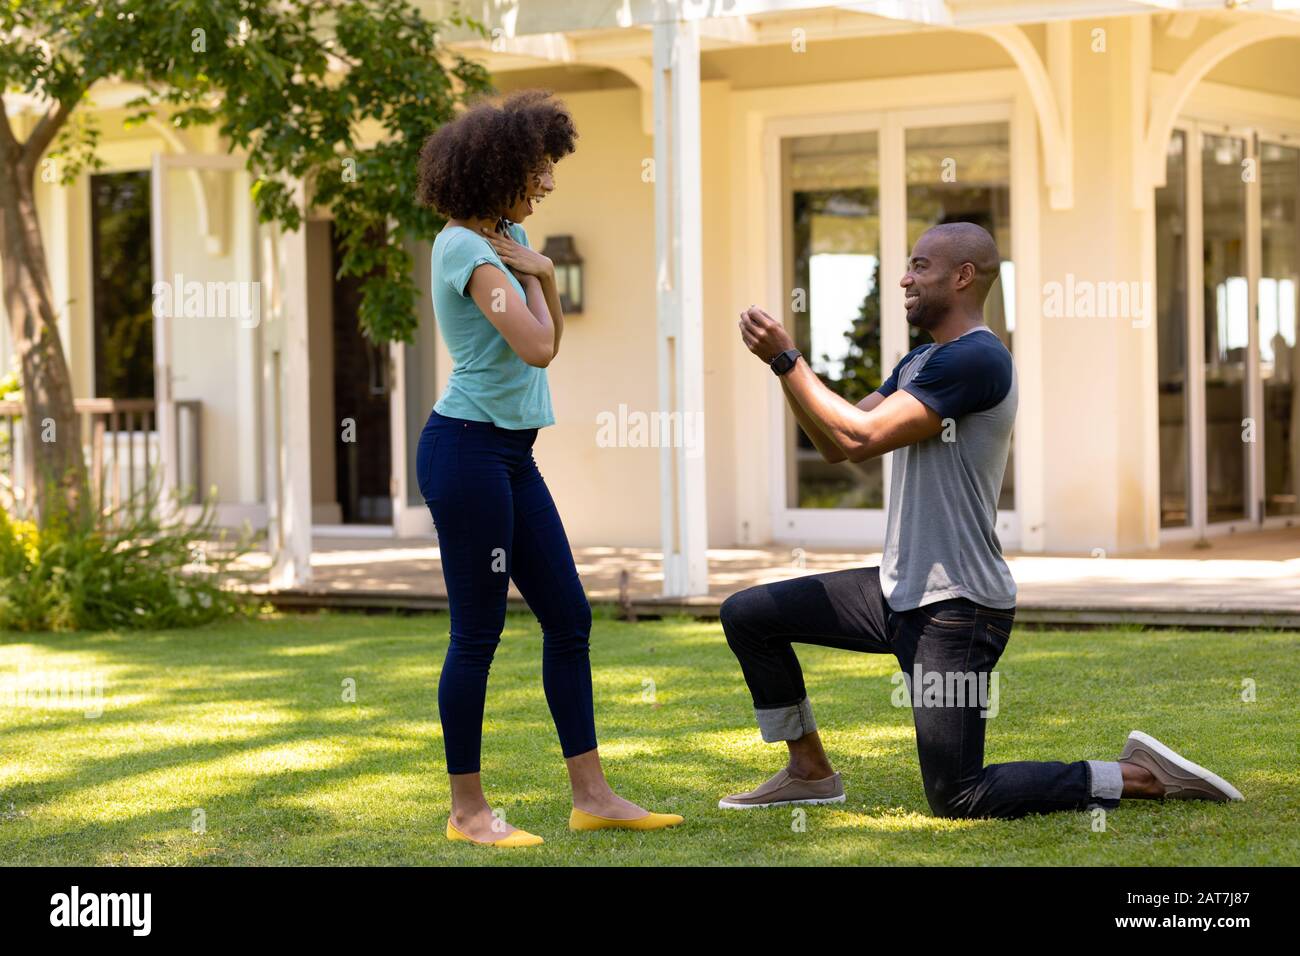 Jeune homme faisant la proposition de mariage dans le jardin Banque D'Images